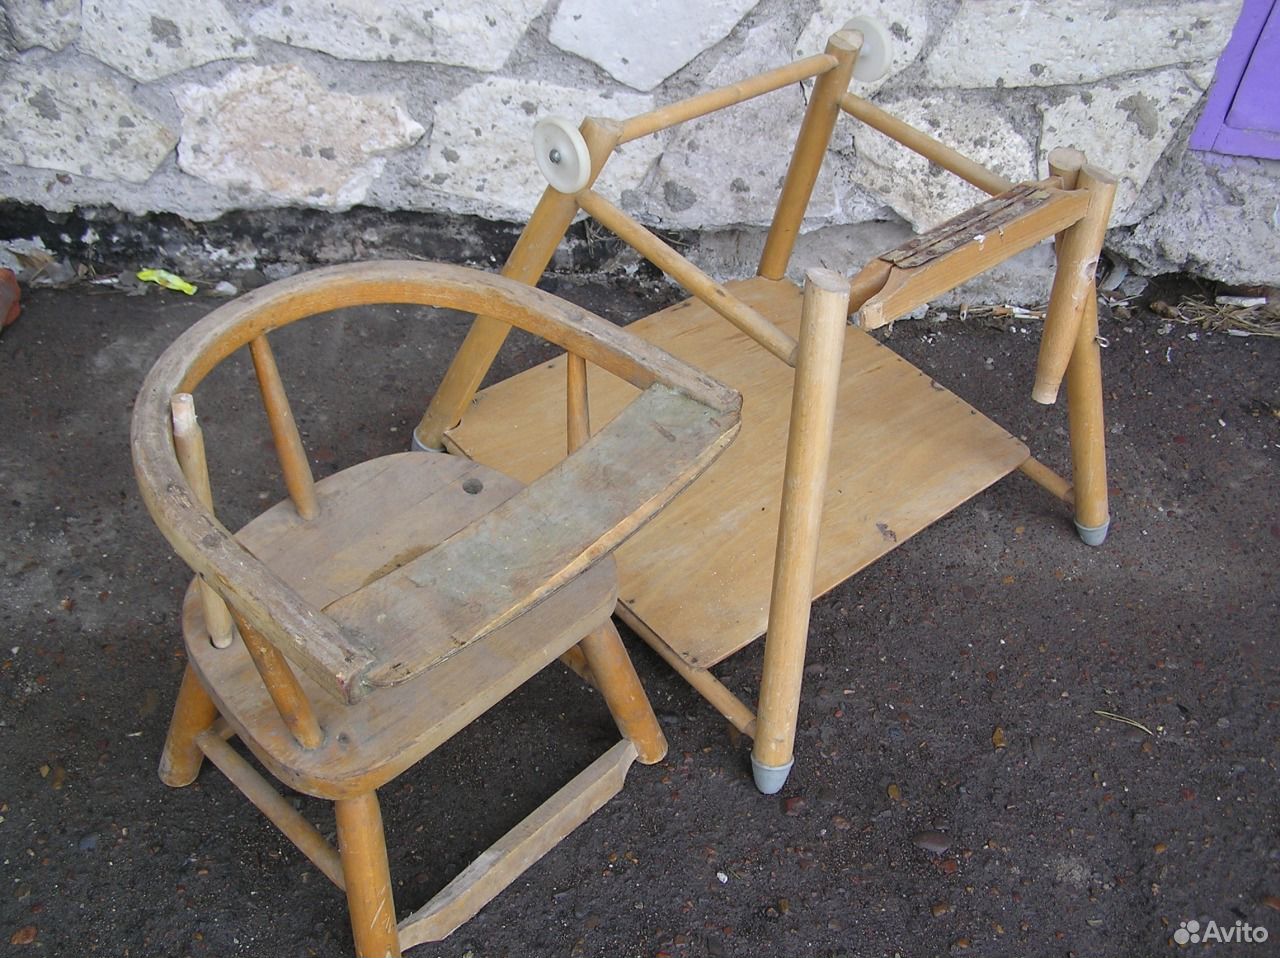 Автомобиль и стульчик сделанный в СССР